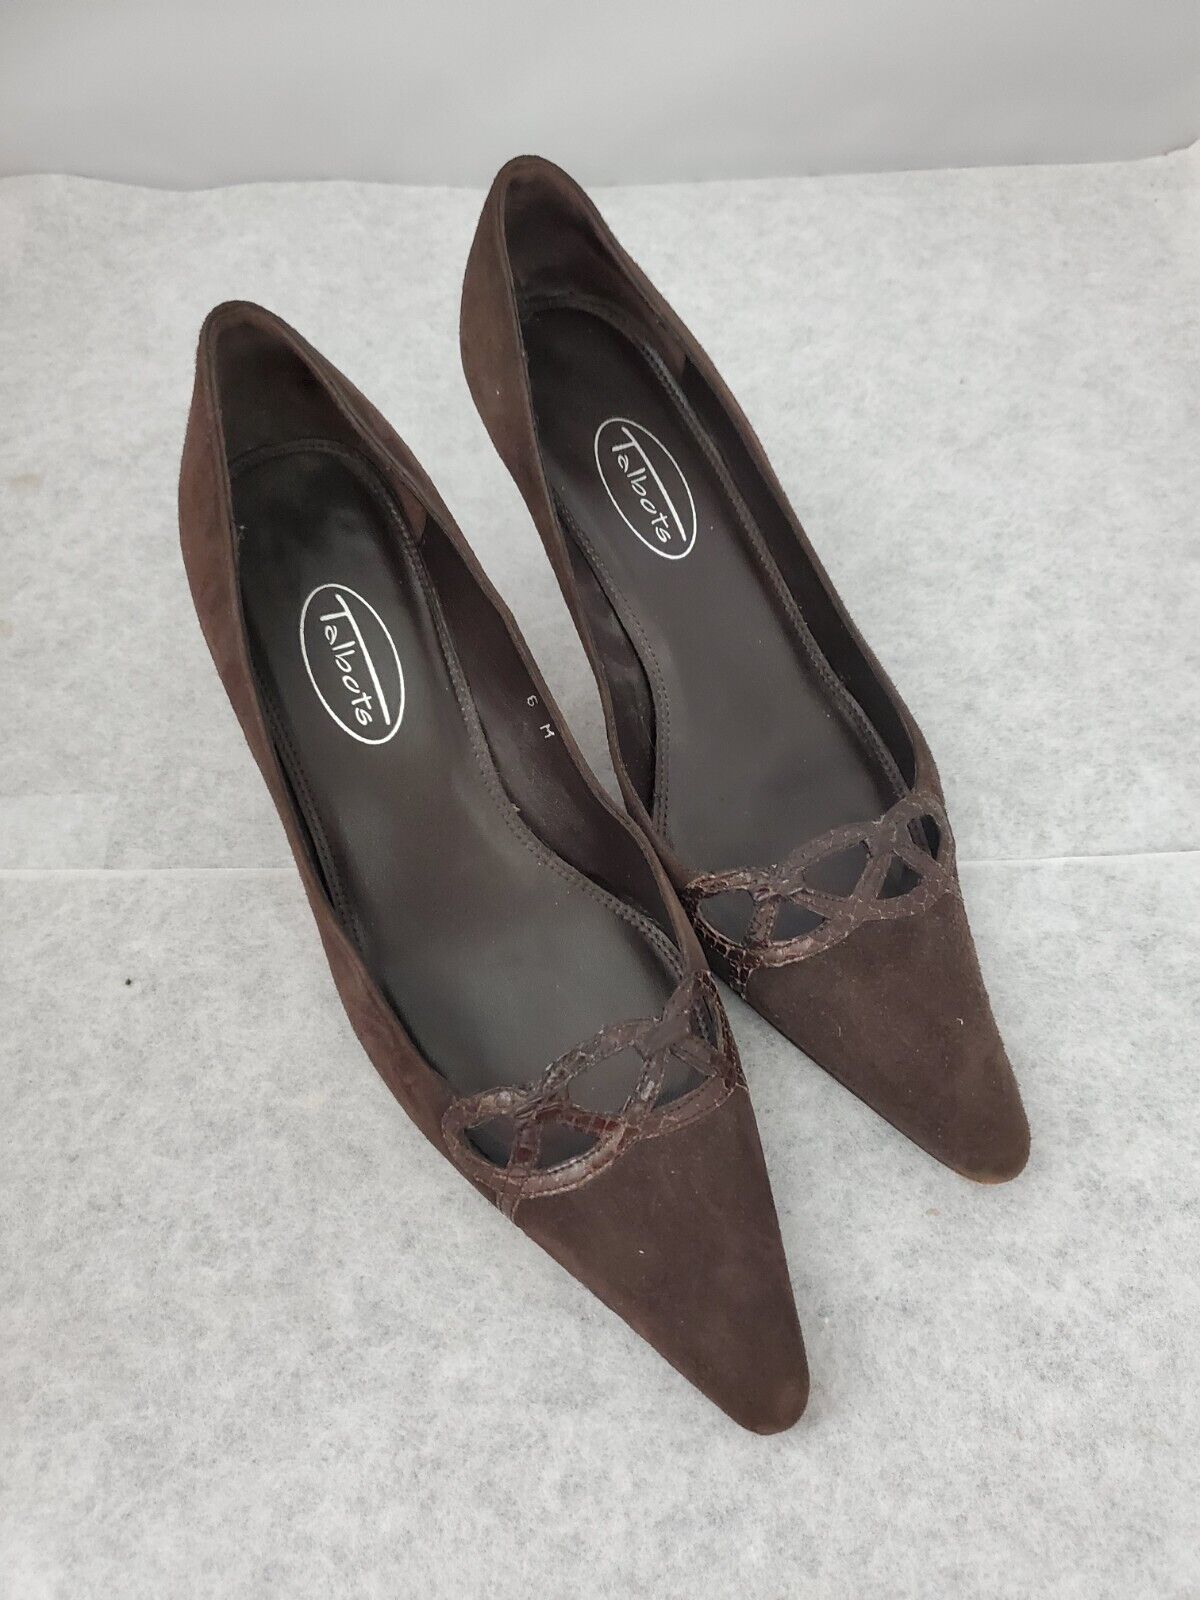 Talbots Womens High Heel Shoes 6 M Dark Brown Suede Leather Spool Heel Pumps